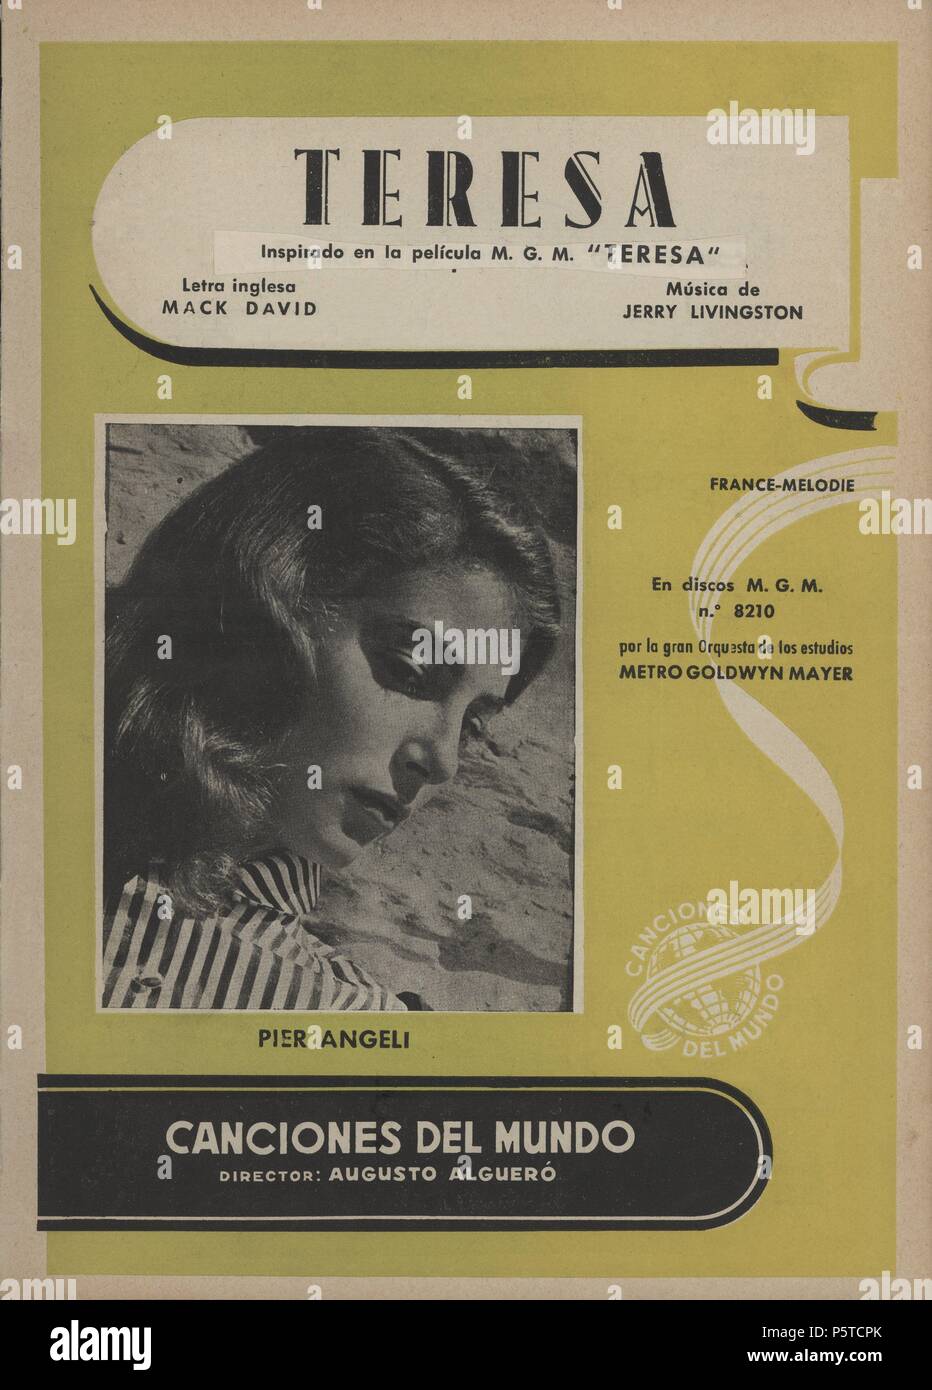 Partitura musikalische y cancionero. Teresa, Banda Sonora de la película del mismo título, Música de Jerry Livingston. Barcelona, 1951. Stockfoto